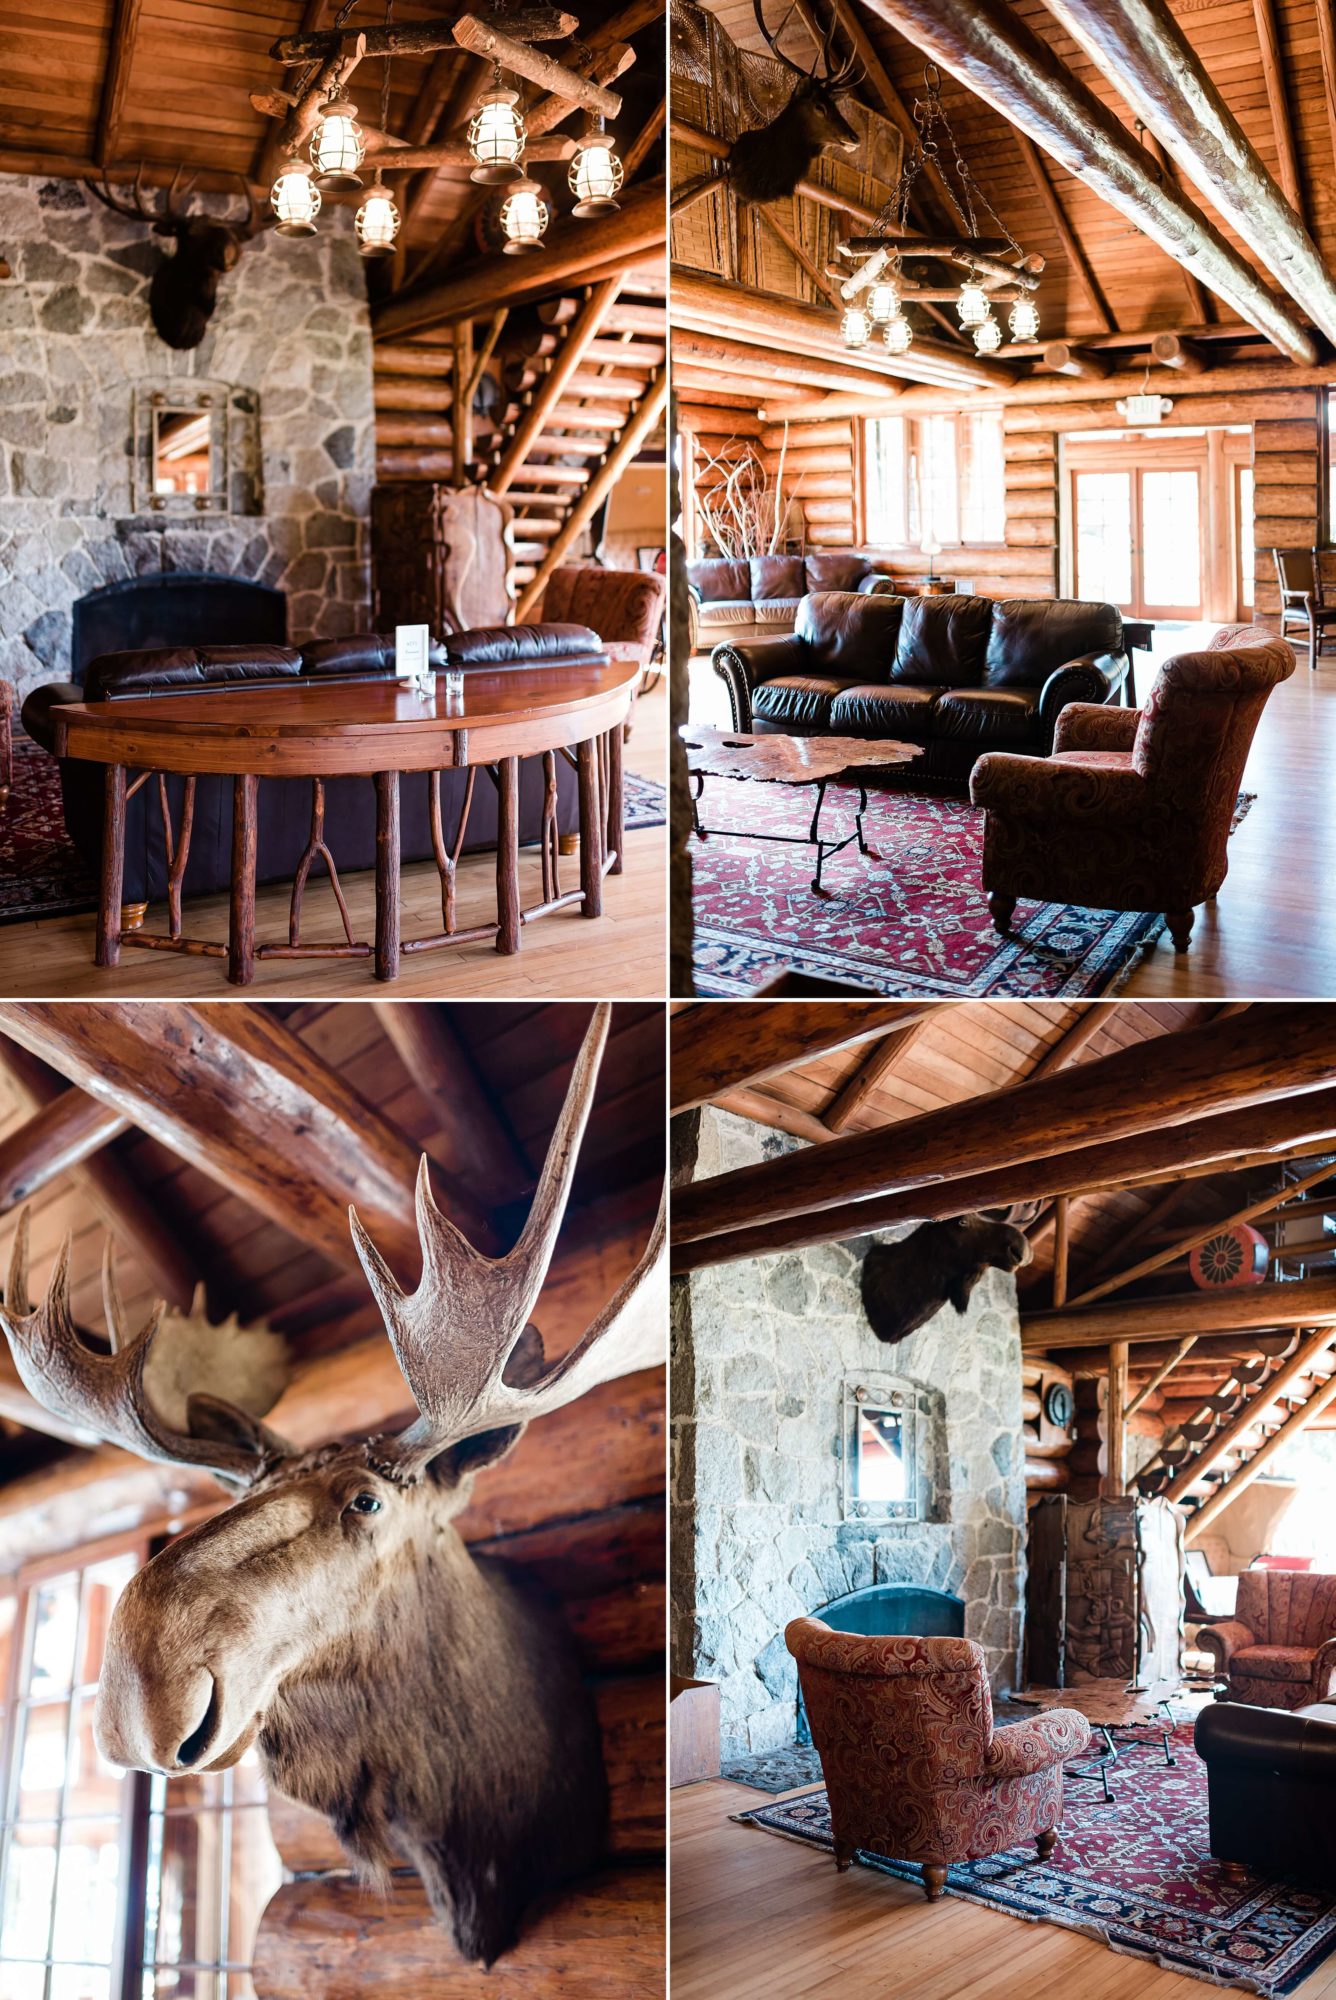 Cozy interior at Kiana Lodge